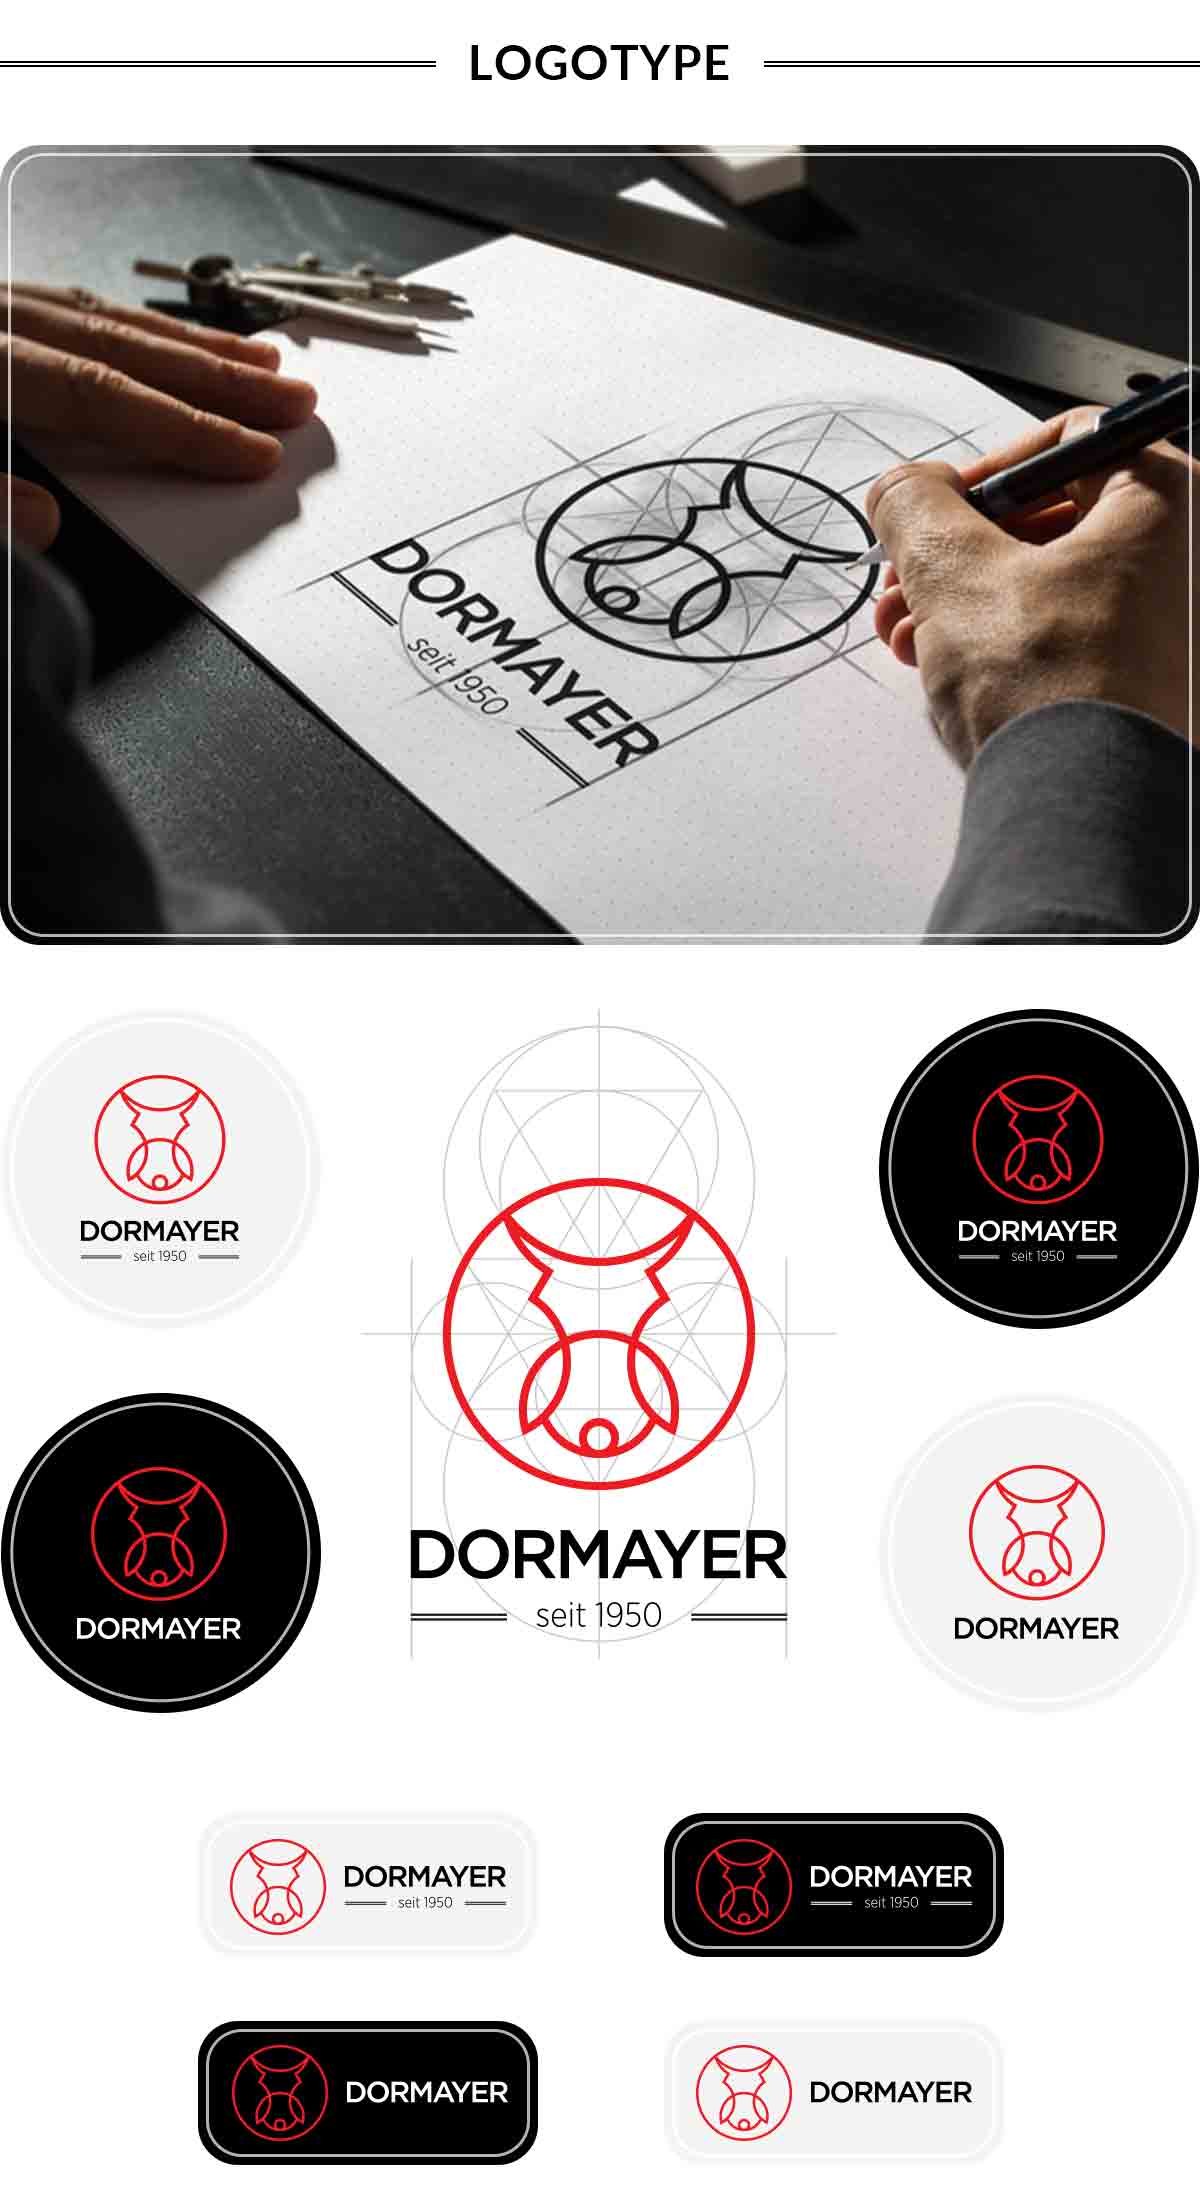 gregory-dreamer-project-dormayer-03-logotype